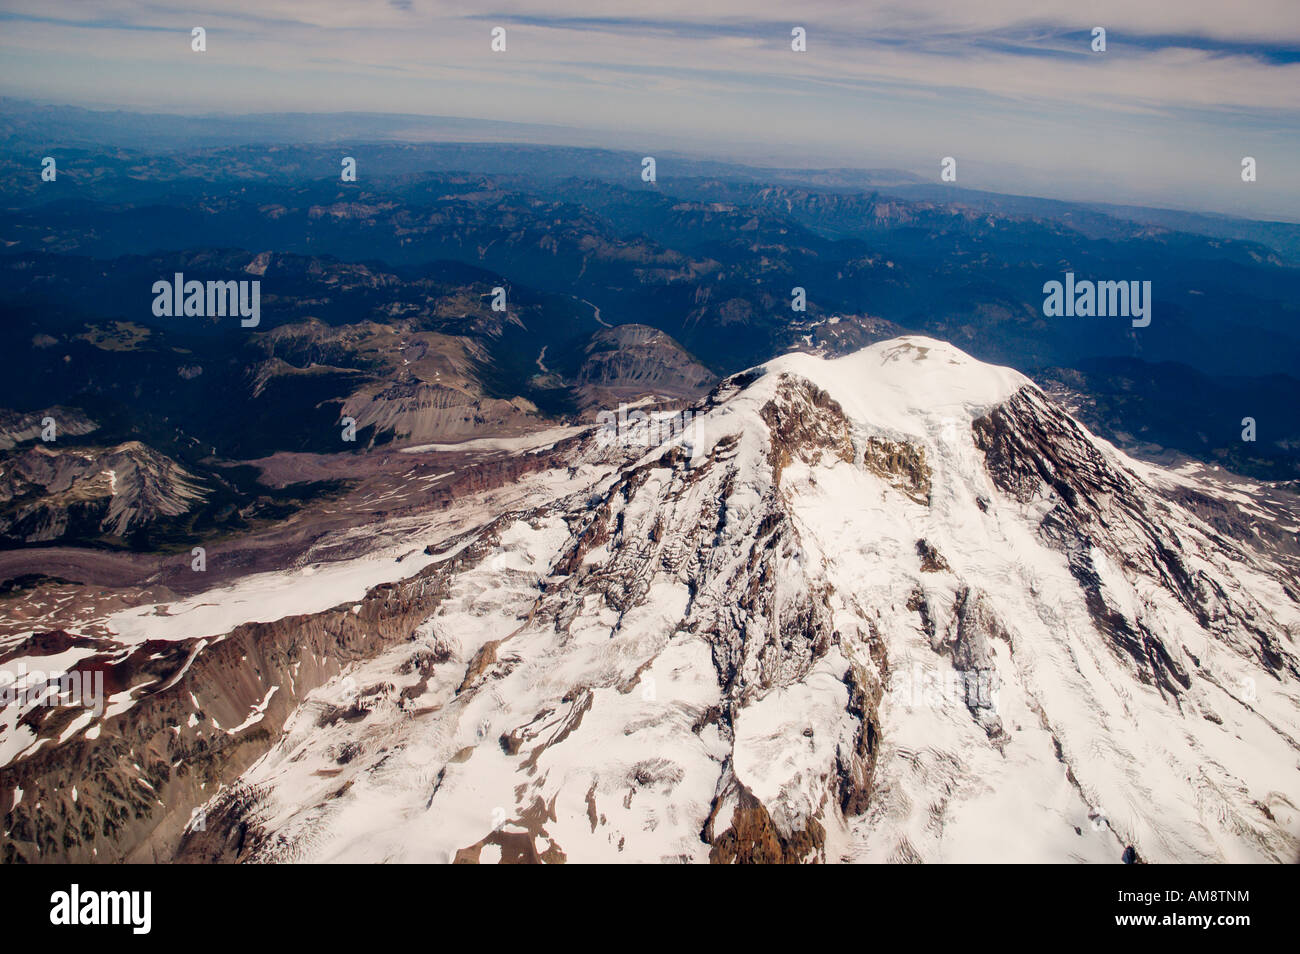 Aerial View of Mount Rainier, Washington. Stock Photo